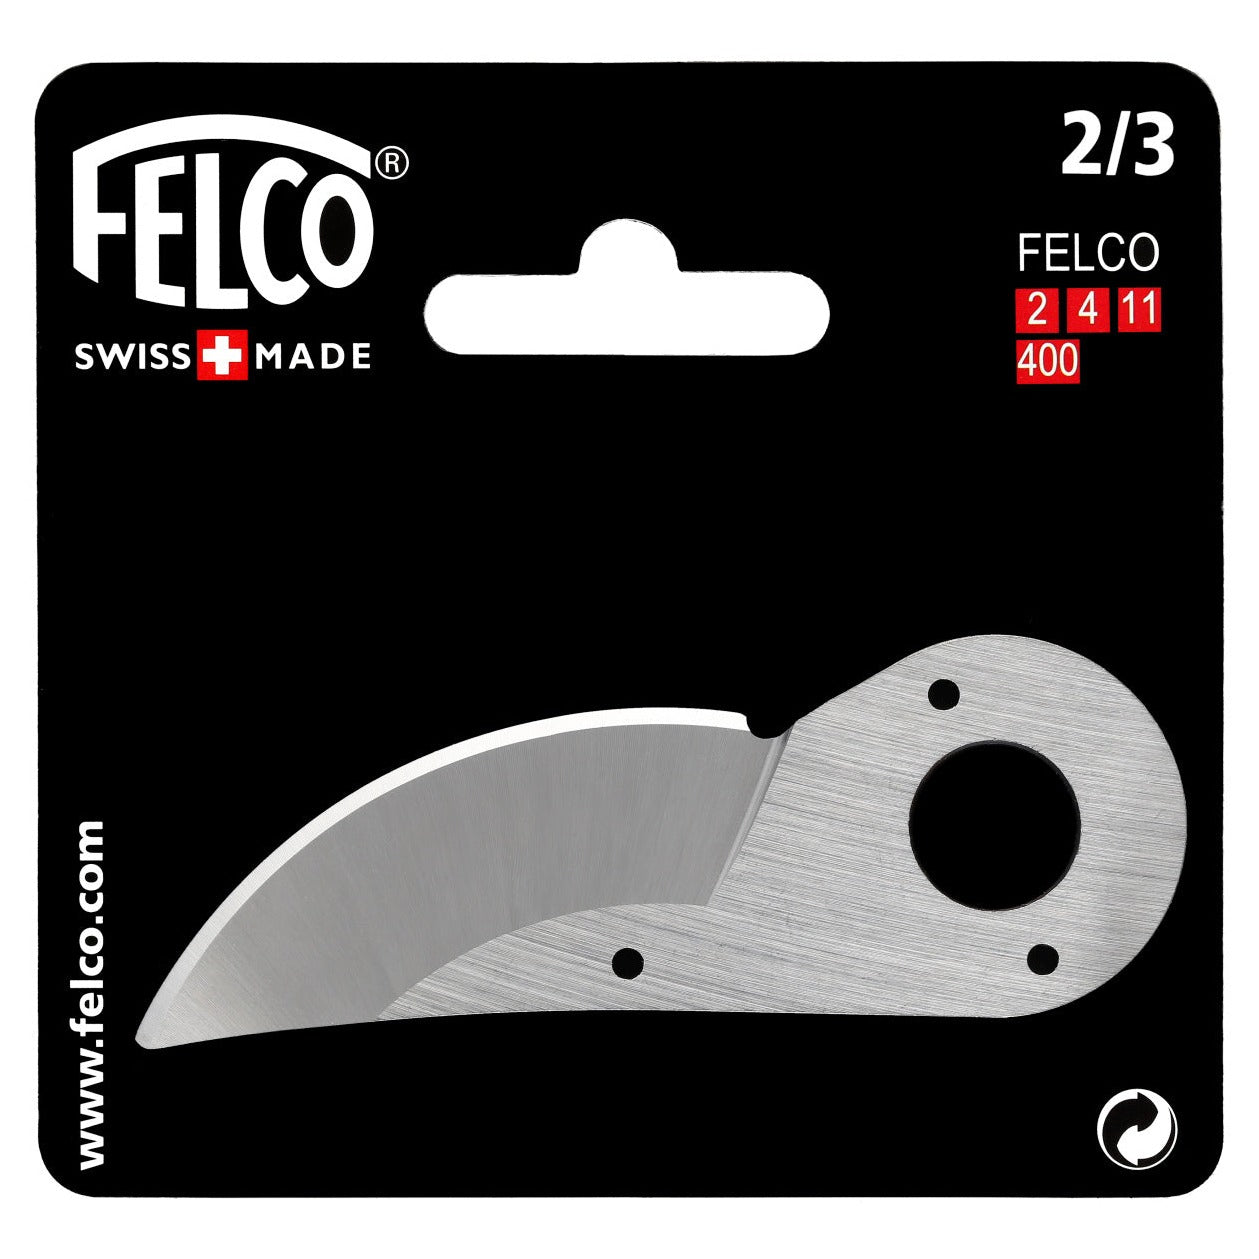 Felco #2-3 Cutting Blade